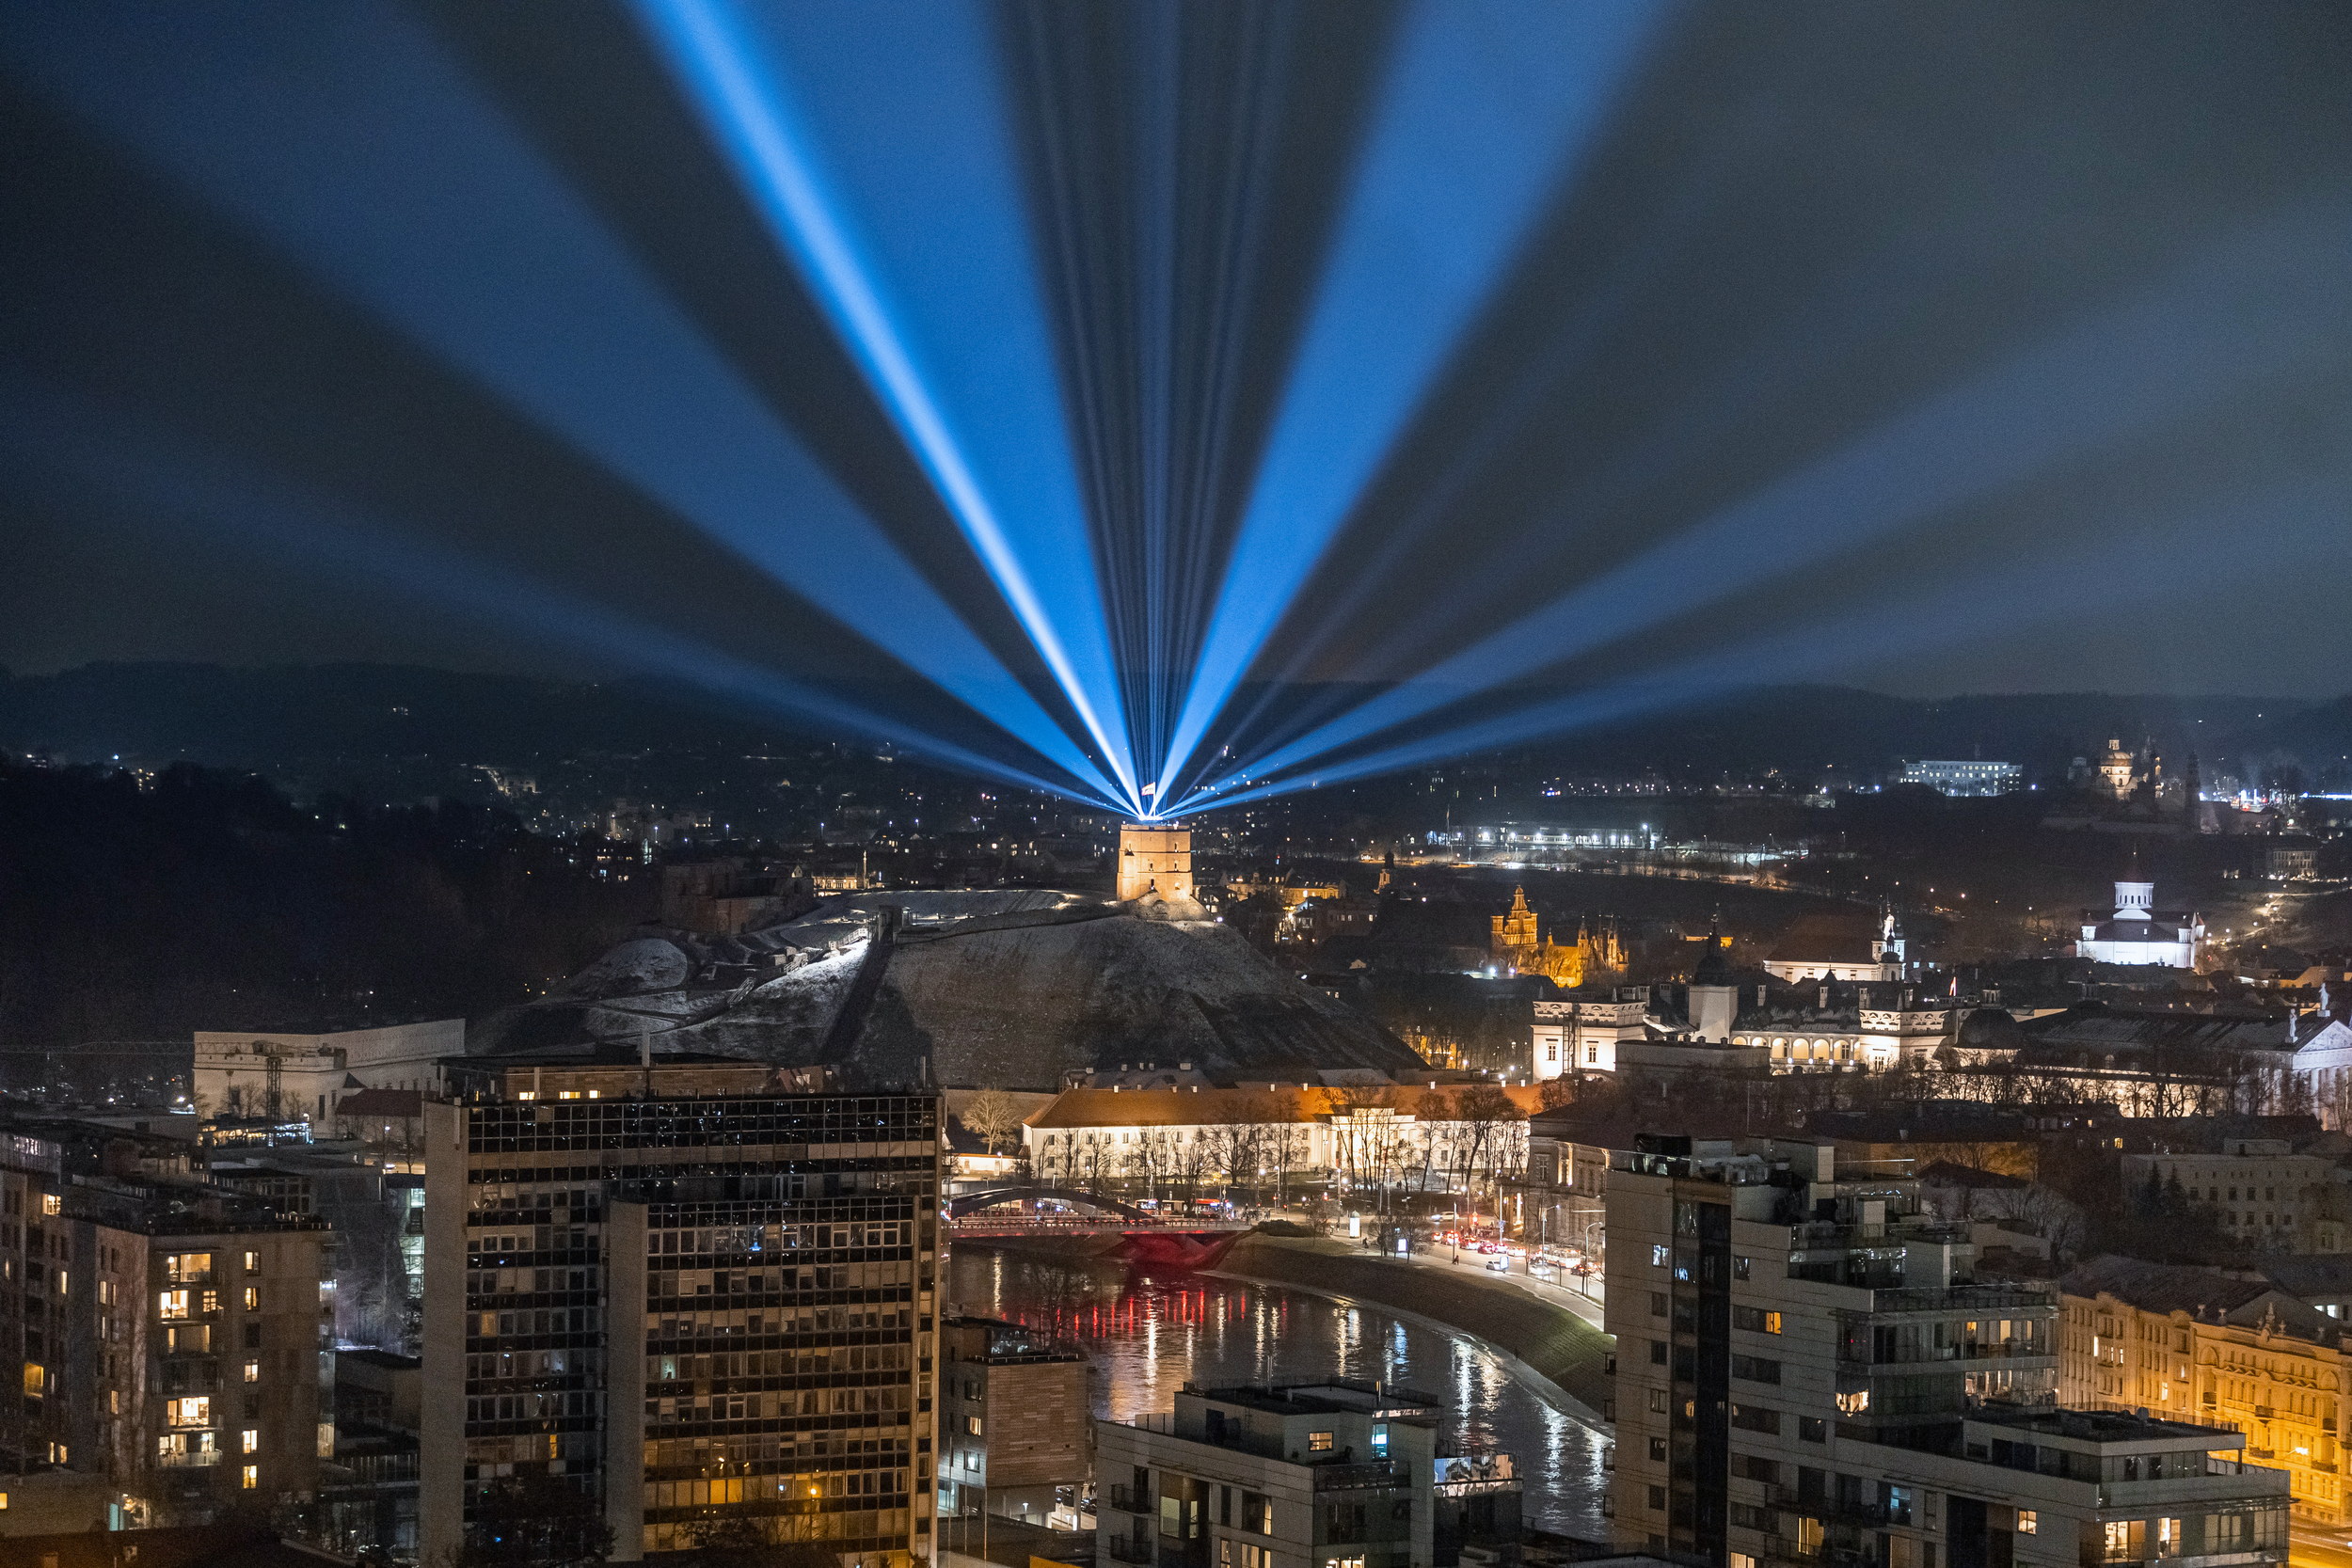 Vilniaus šviesų festivalio metu bus ribojamas eismas sostinės senamiestyje